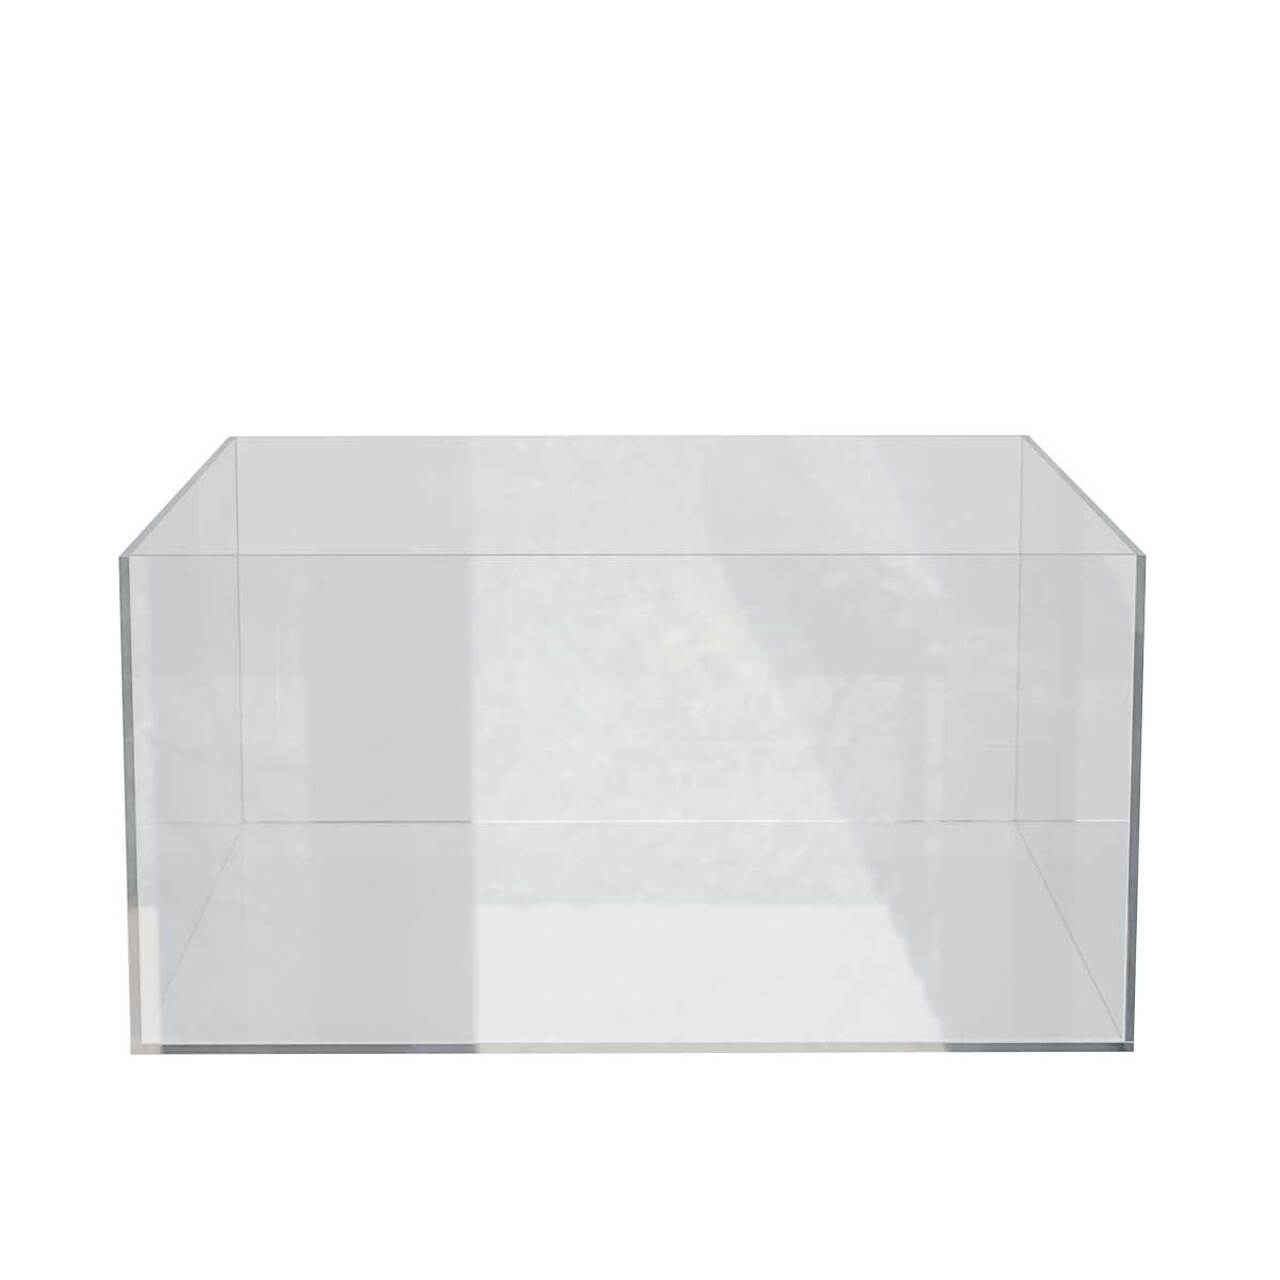 Cutie organizatoare simplă, din plexiglas, format 200 x 200 x 100(h).